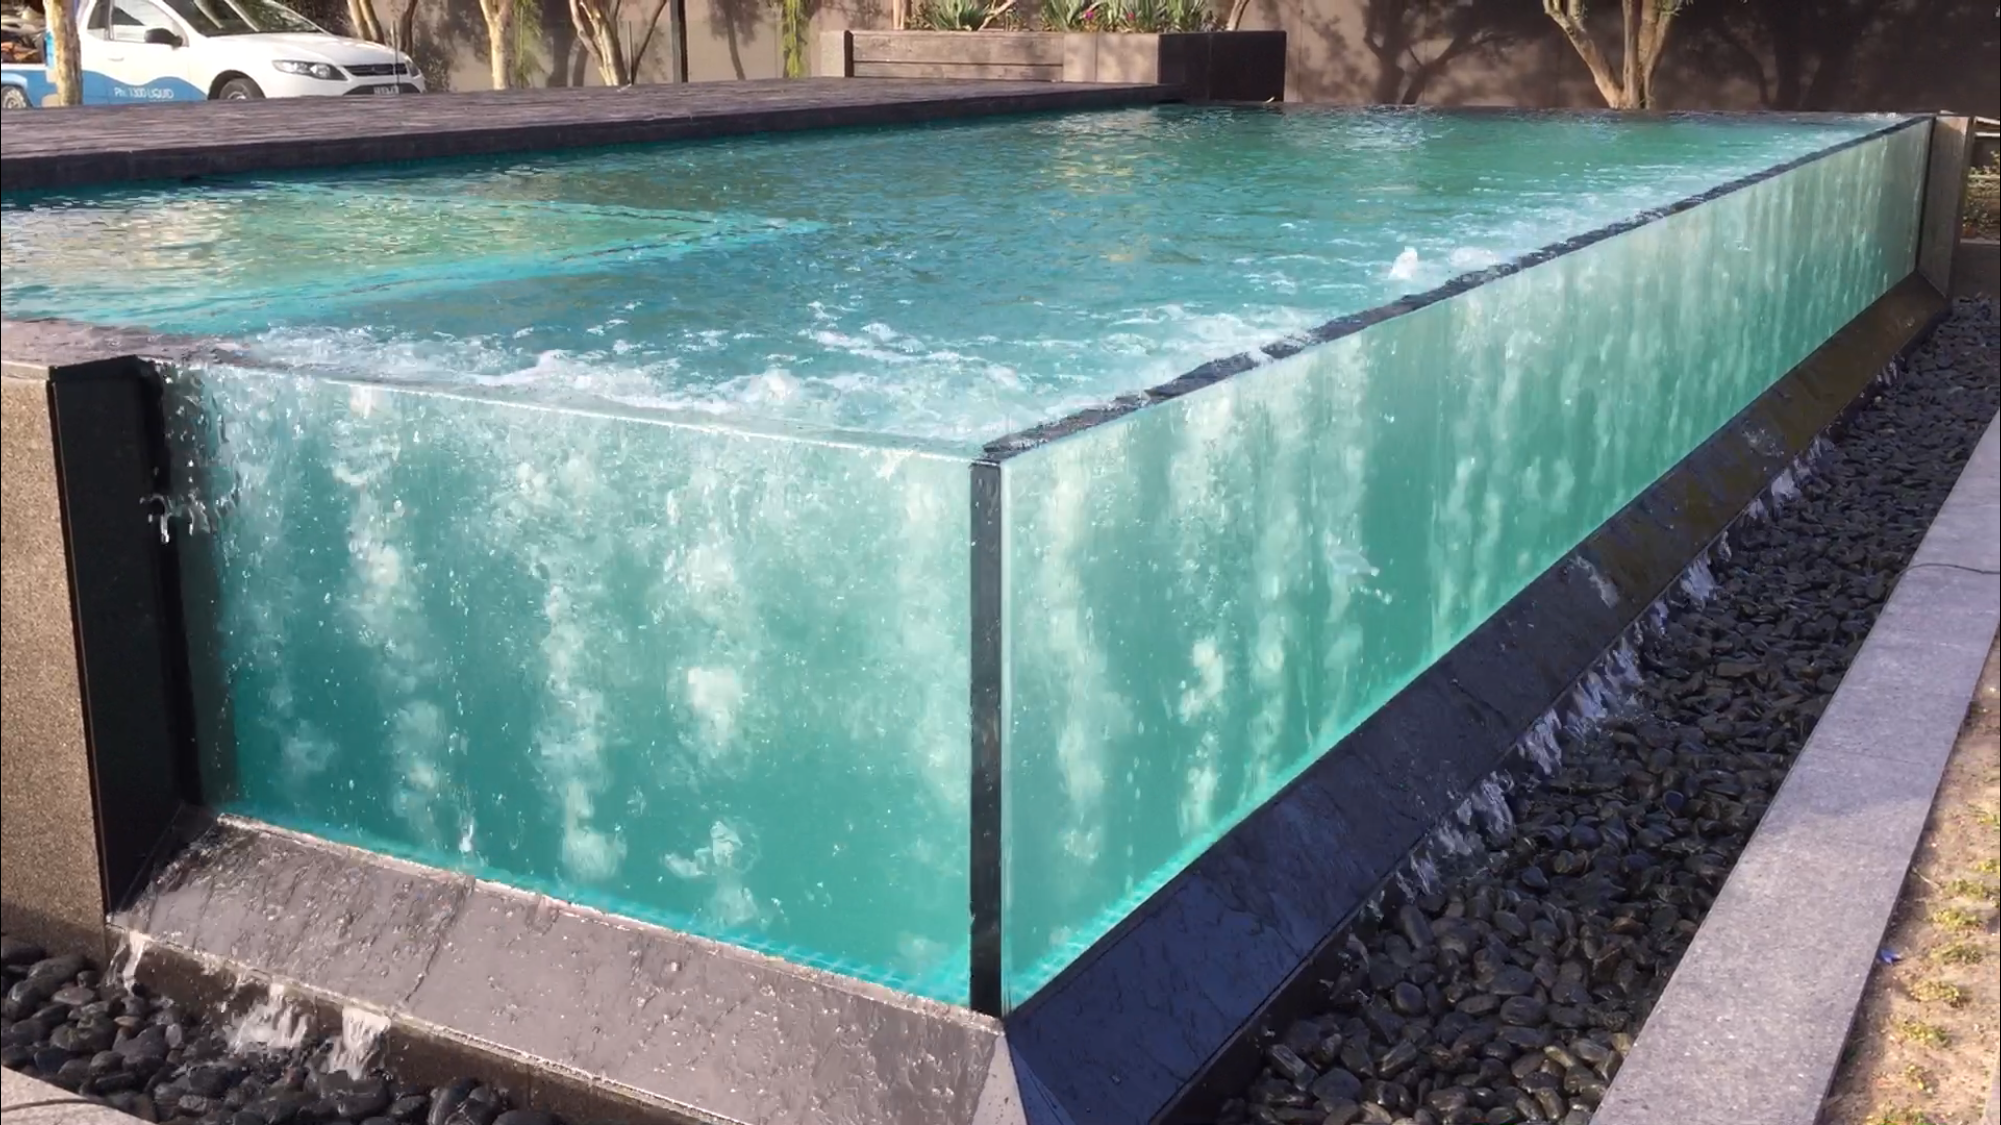 LEYU le ofrece una colección masiva de piscinas de vidrio acrílico lujosas y modernas - Leyu